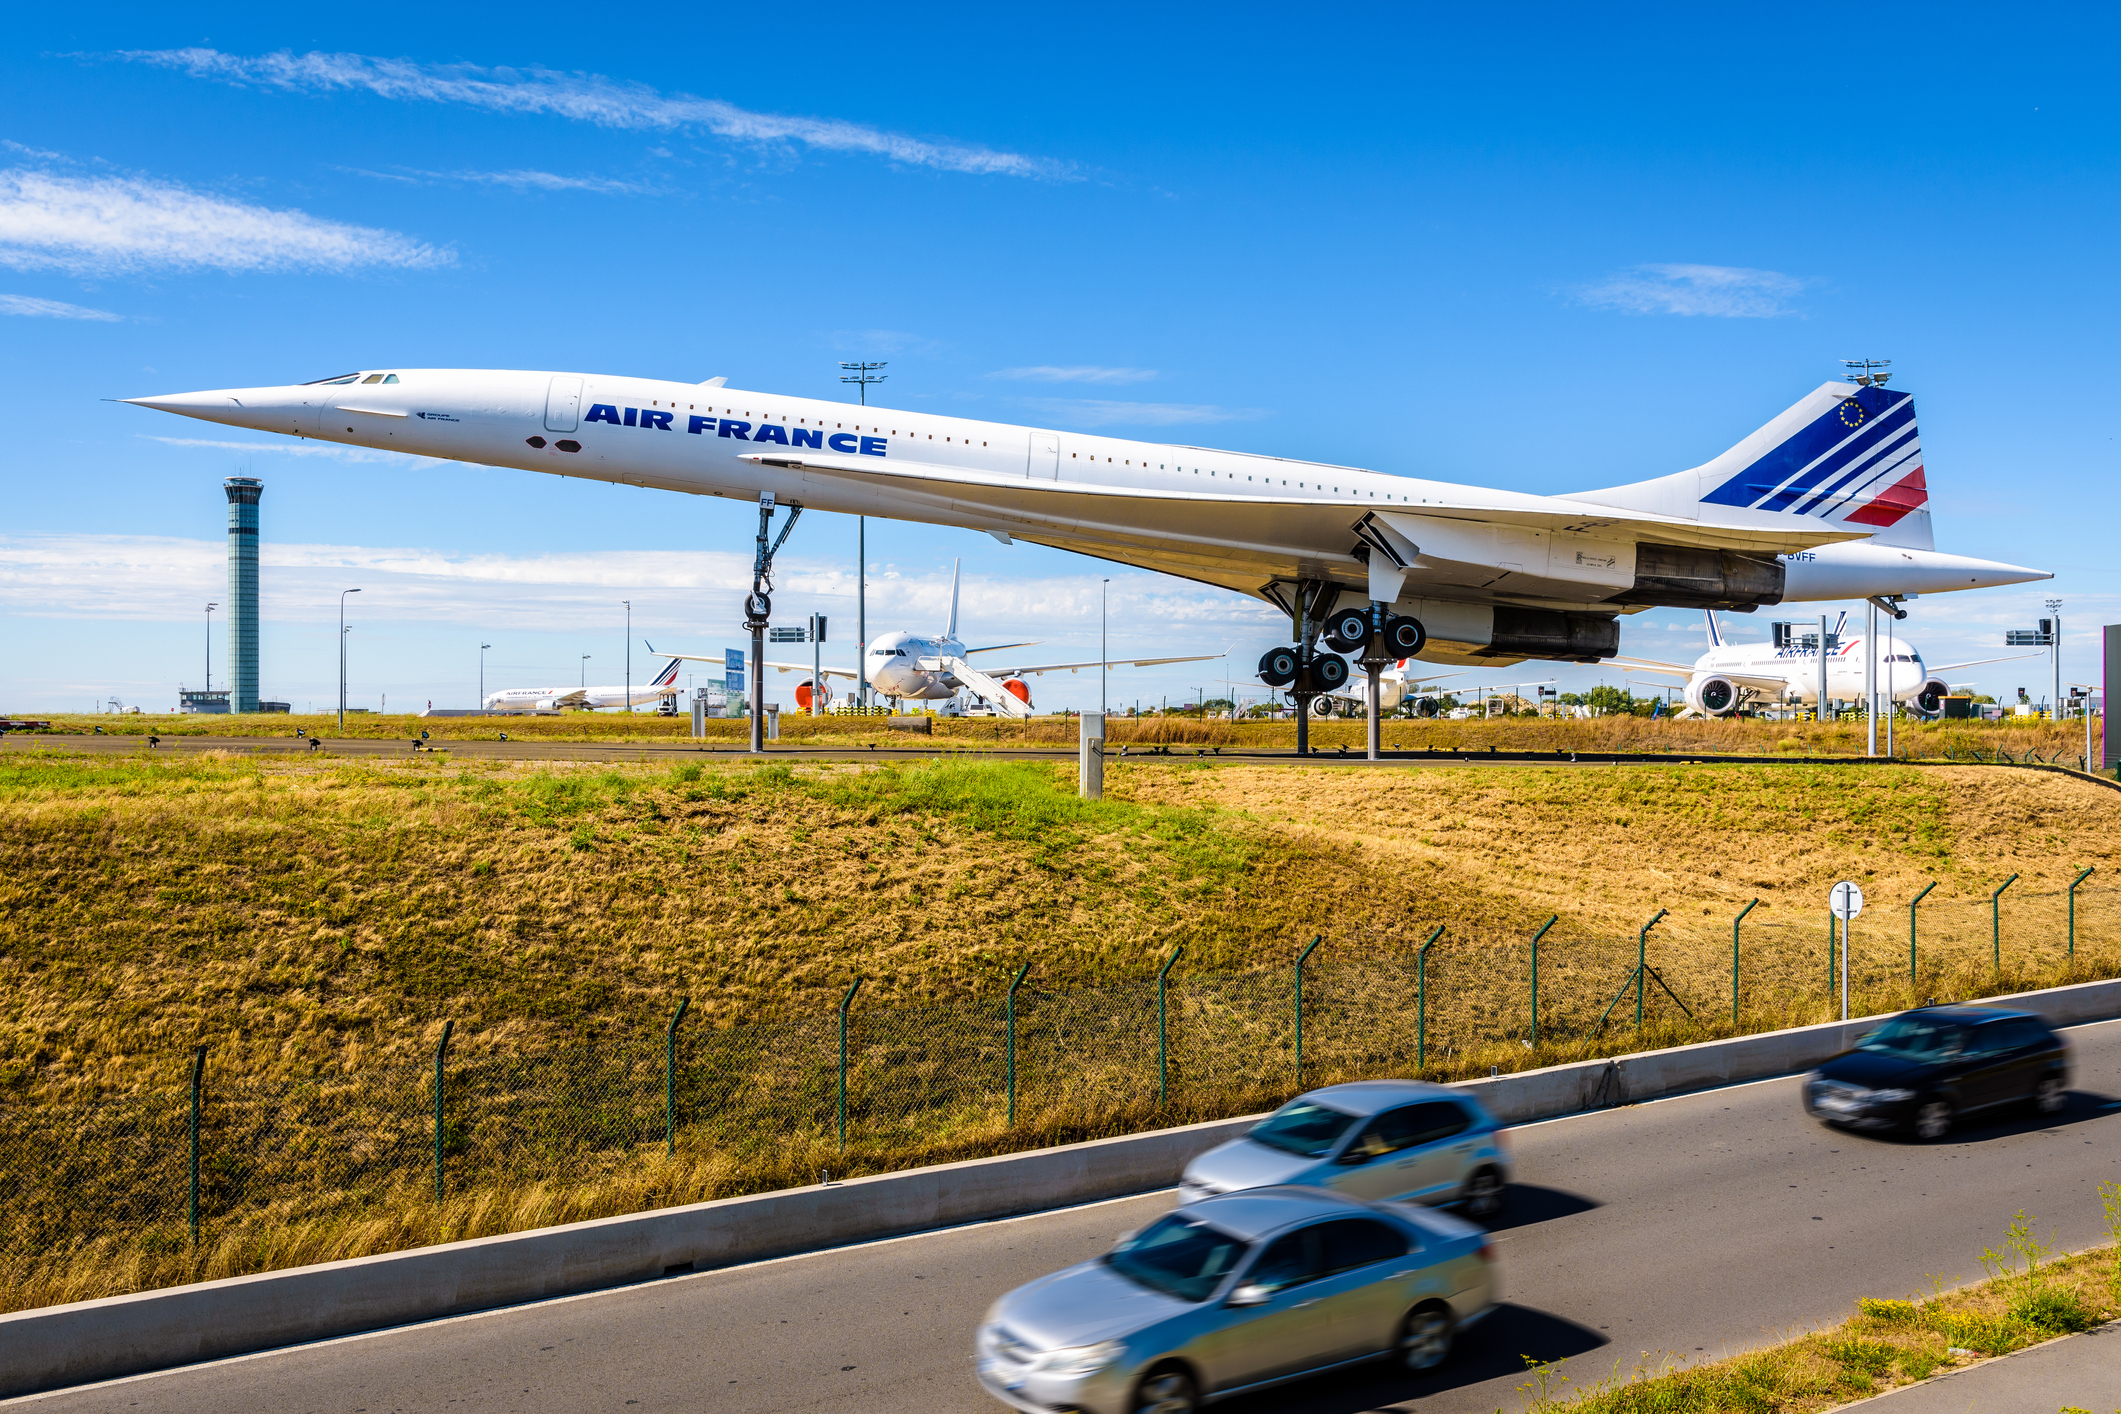 Een Air France Concorde tentoongesteld op Paris Charles de Gaulle Airport, met andere Air France vliegtuigen op de achtergrond.